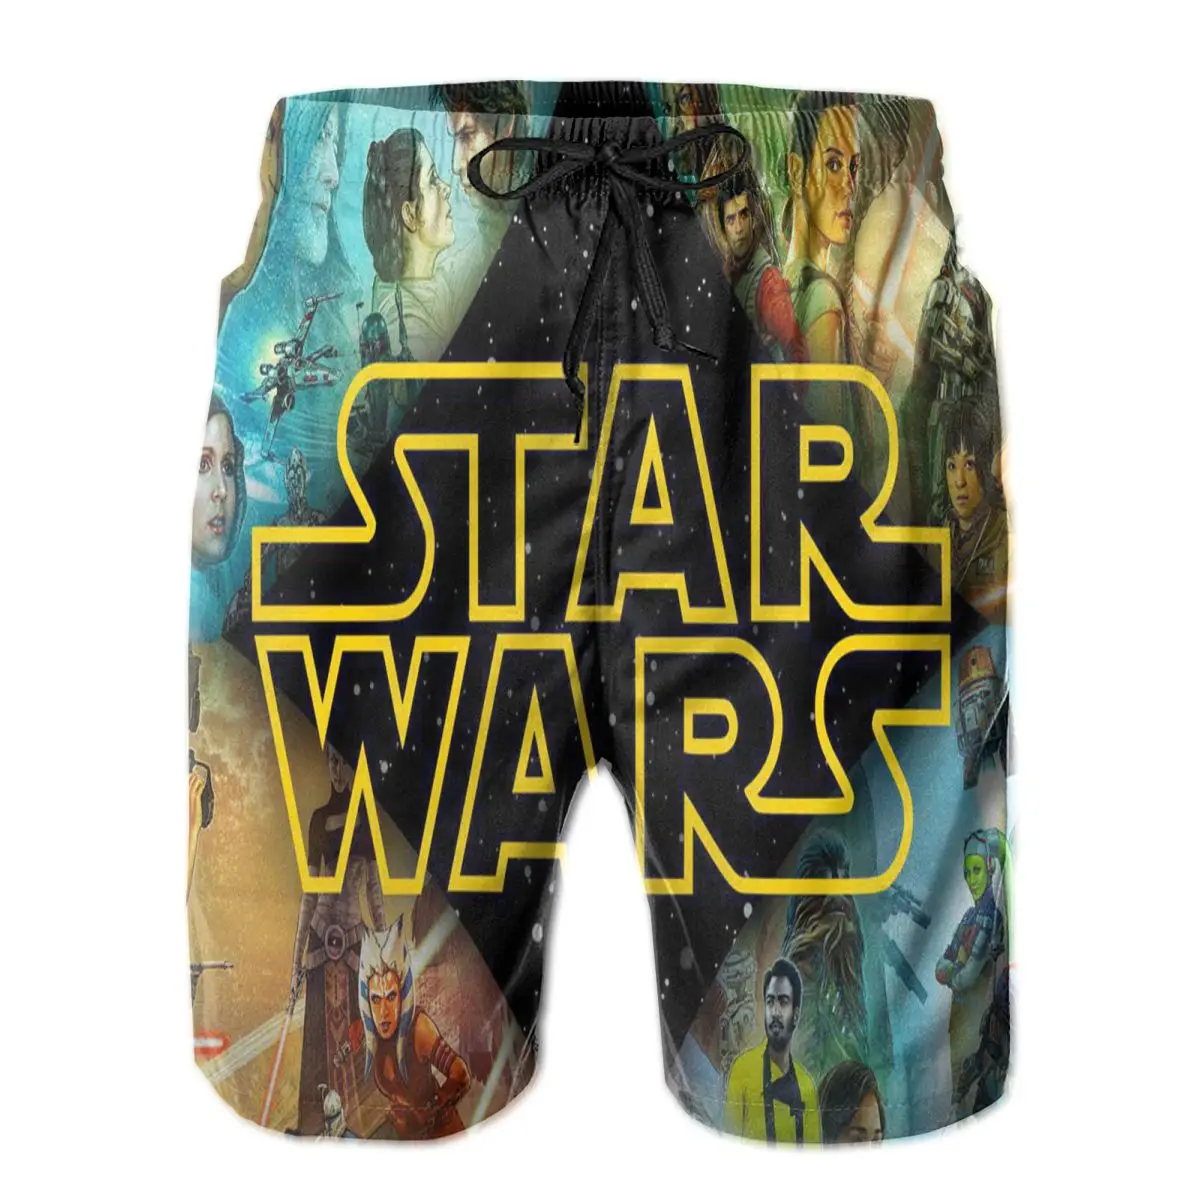 

Мужские быстросохнущие плавки S.tar Wars, пляжные шорты в цветную полоску с сетчатой подкладкой